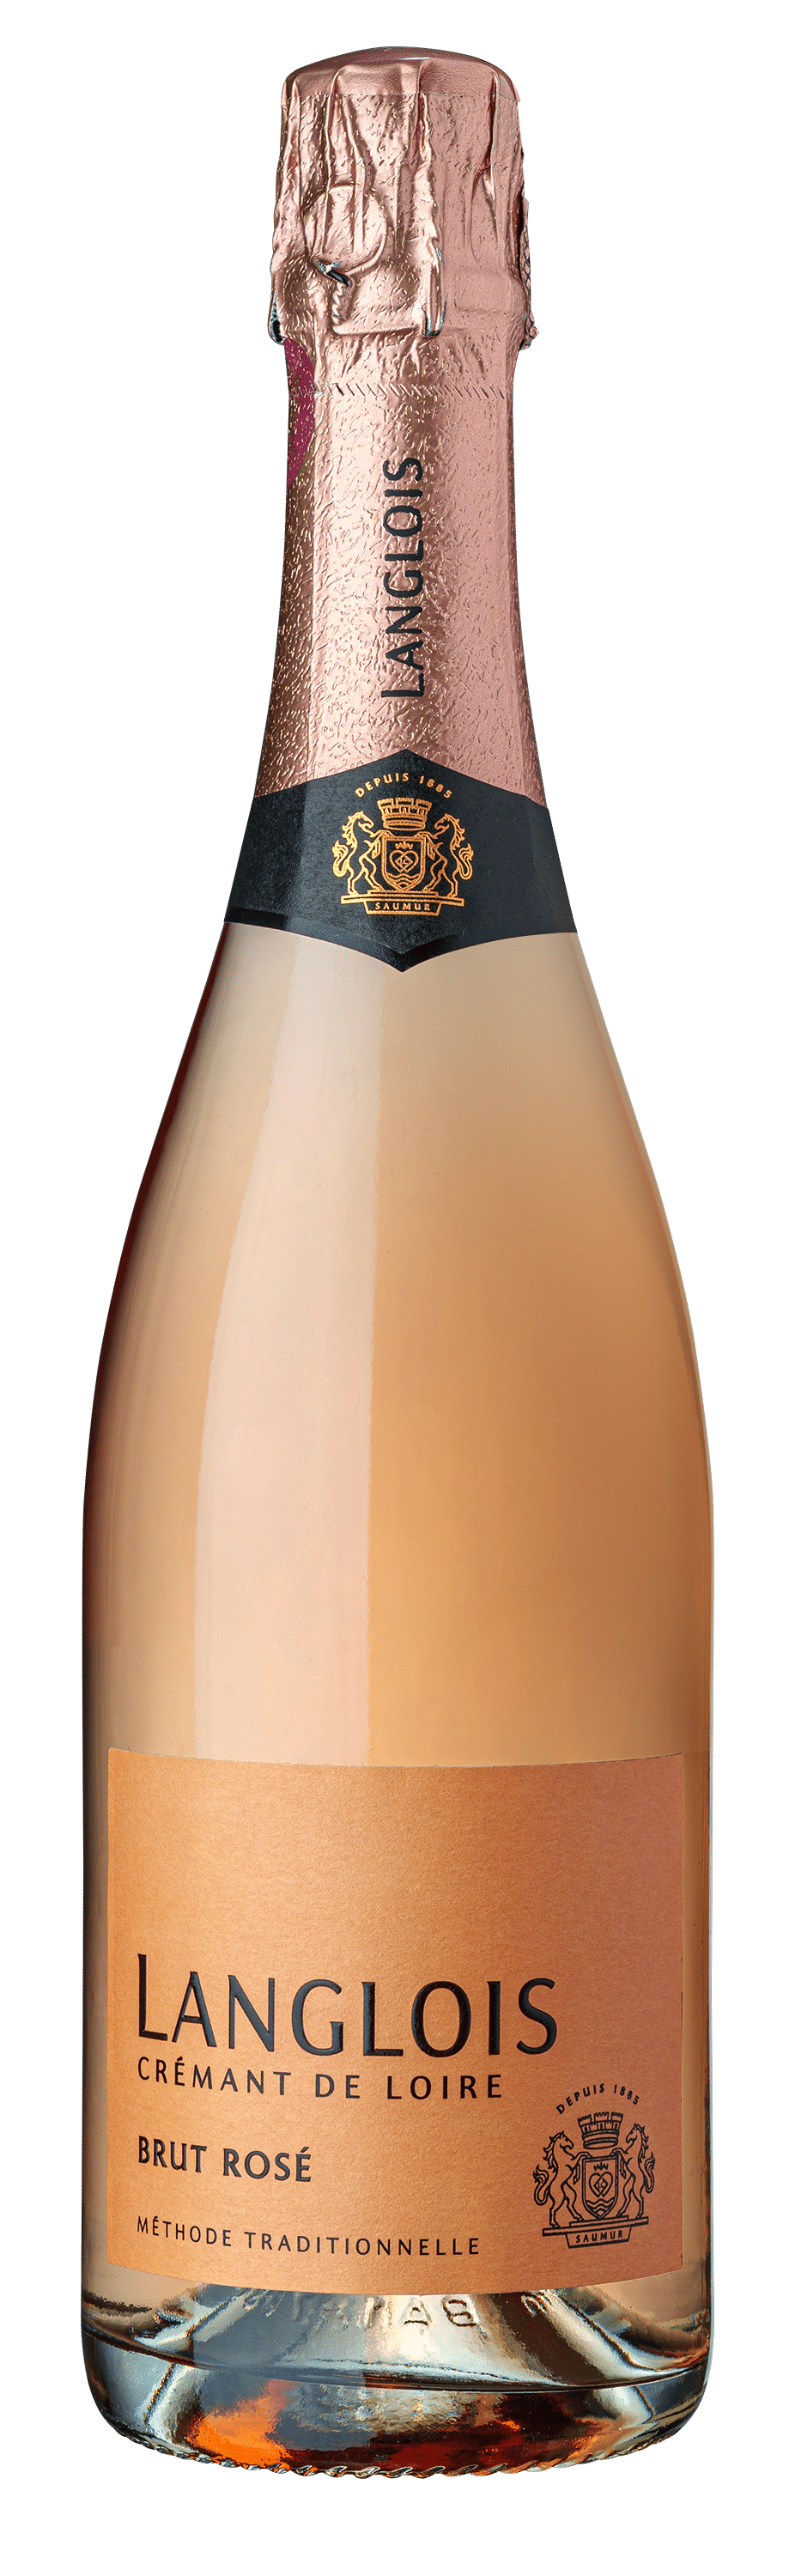 Brut Rosé - Langlois Crémant de Loire